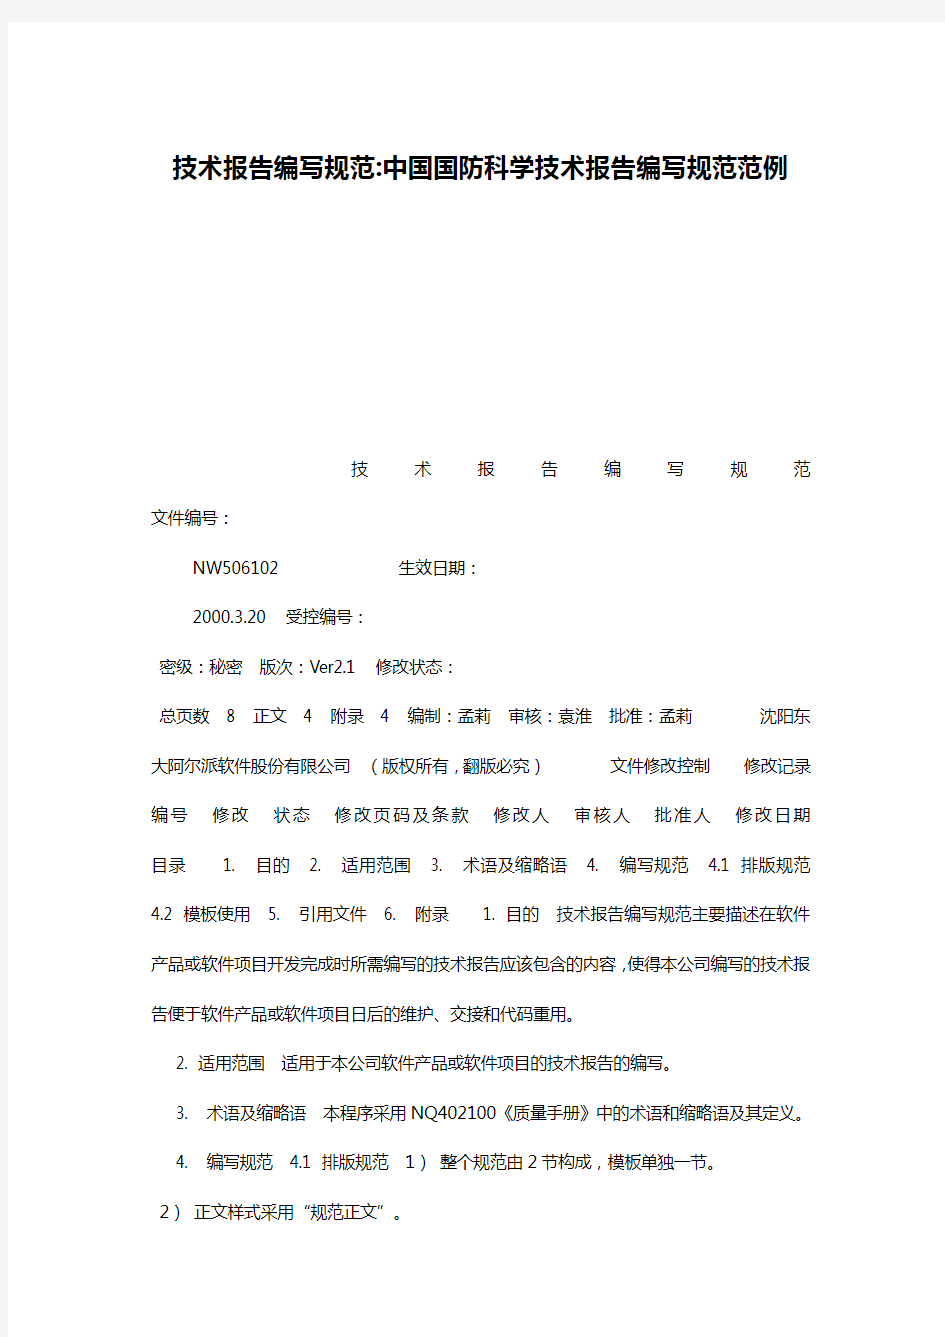 技术报告编写规范-中国国防科学技术报告编写规范范例